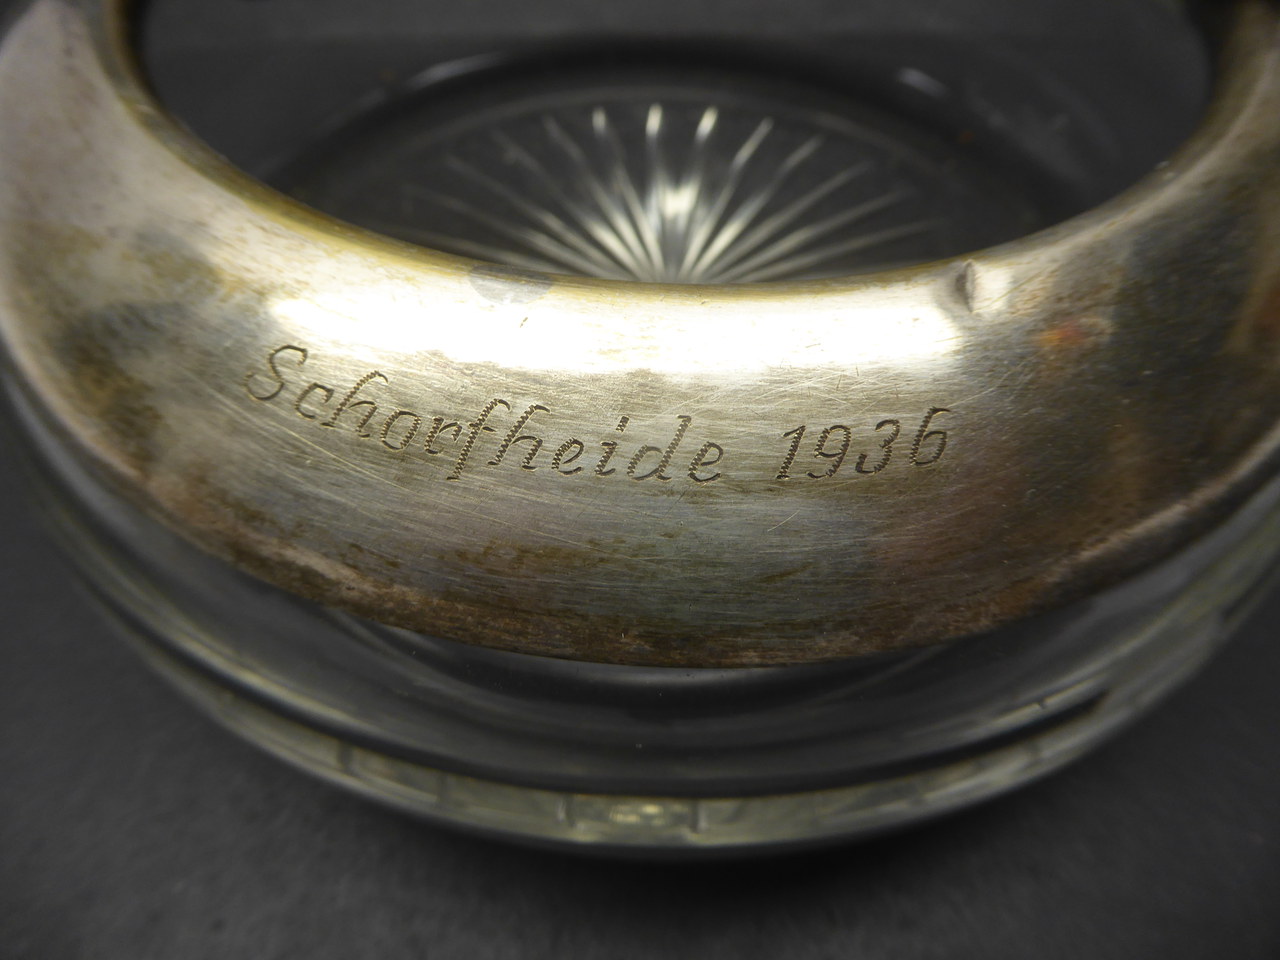 Großer Aschenbecher mit Gravur Schorfheide 1936 - D= 185 mm